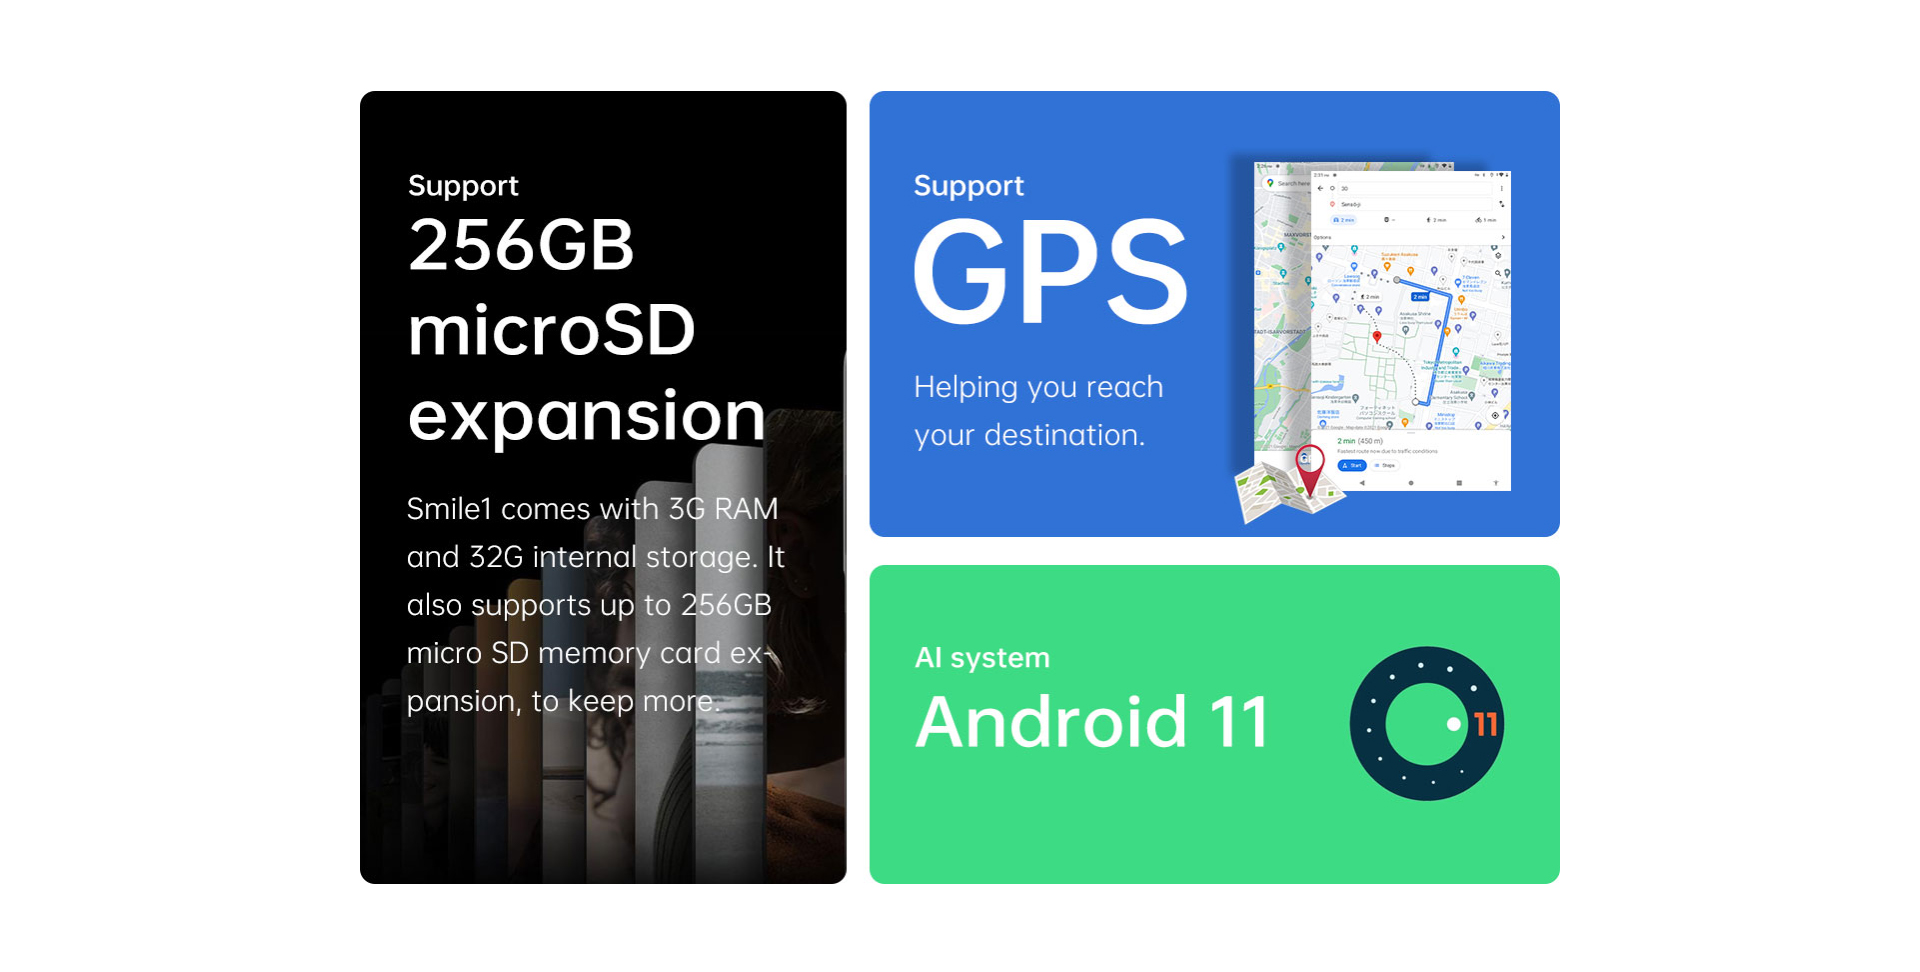 รูปภาพรายละเอียดของ Alldocube Smile 1 แท็บเล็ตจอ 8 นิ้ว 4G ใส่ซิมโทรได้ CPU Tiger T310 Quad-core RAM 3GB  ROM 32GB  Android11 2.4/5GHz WiFi GPS Blth 4000mAh